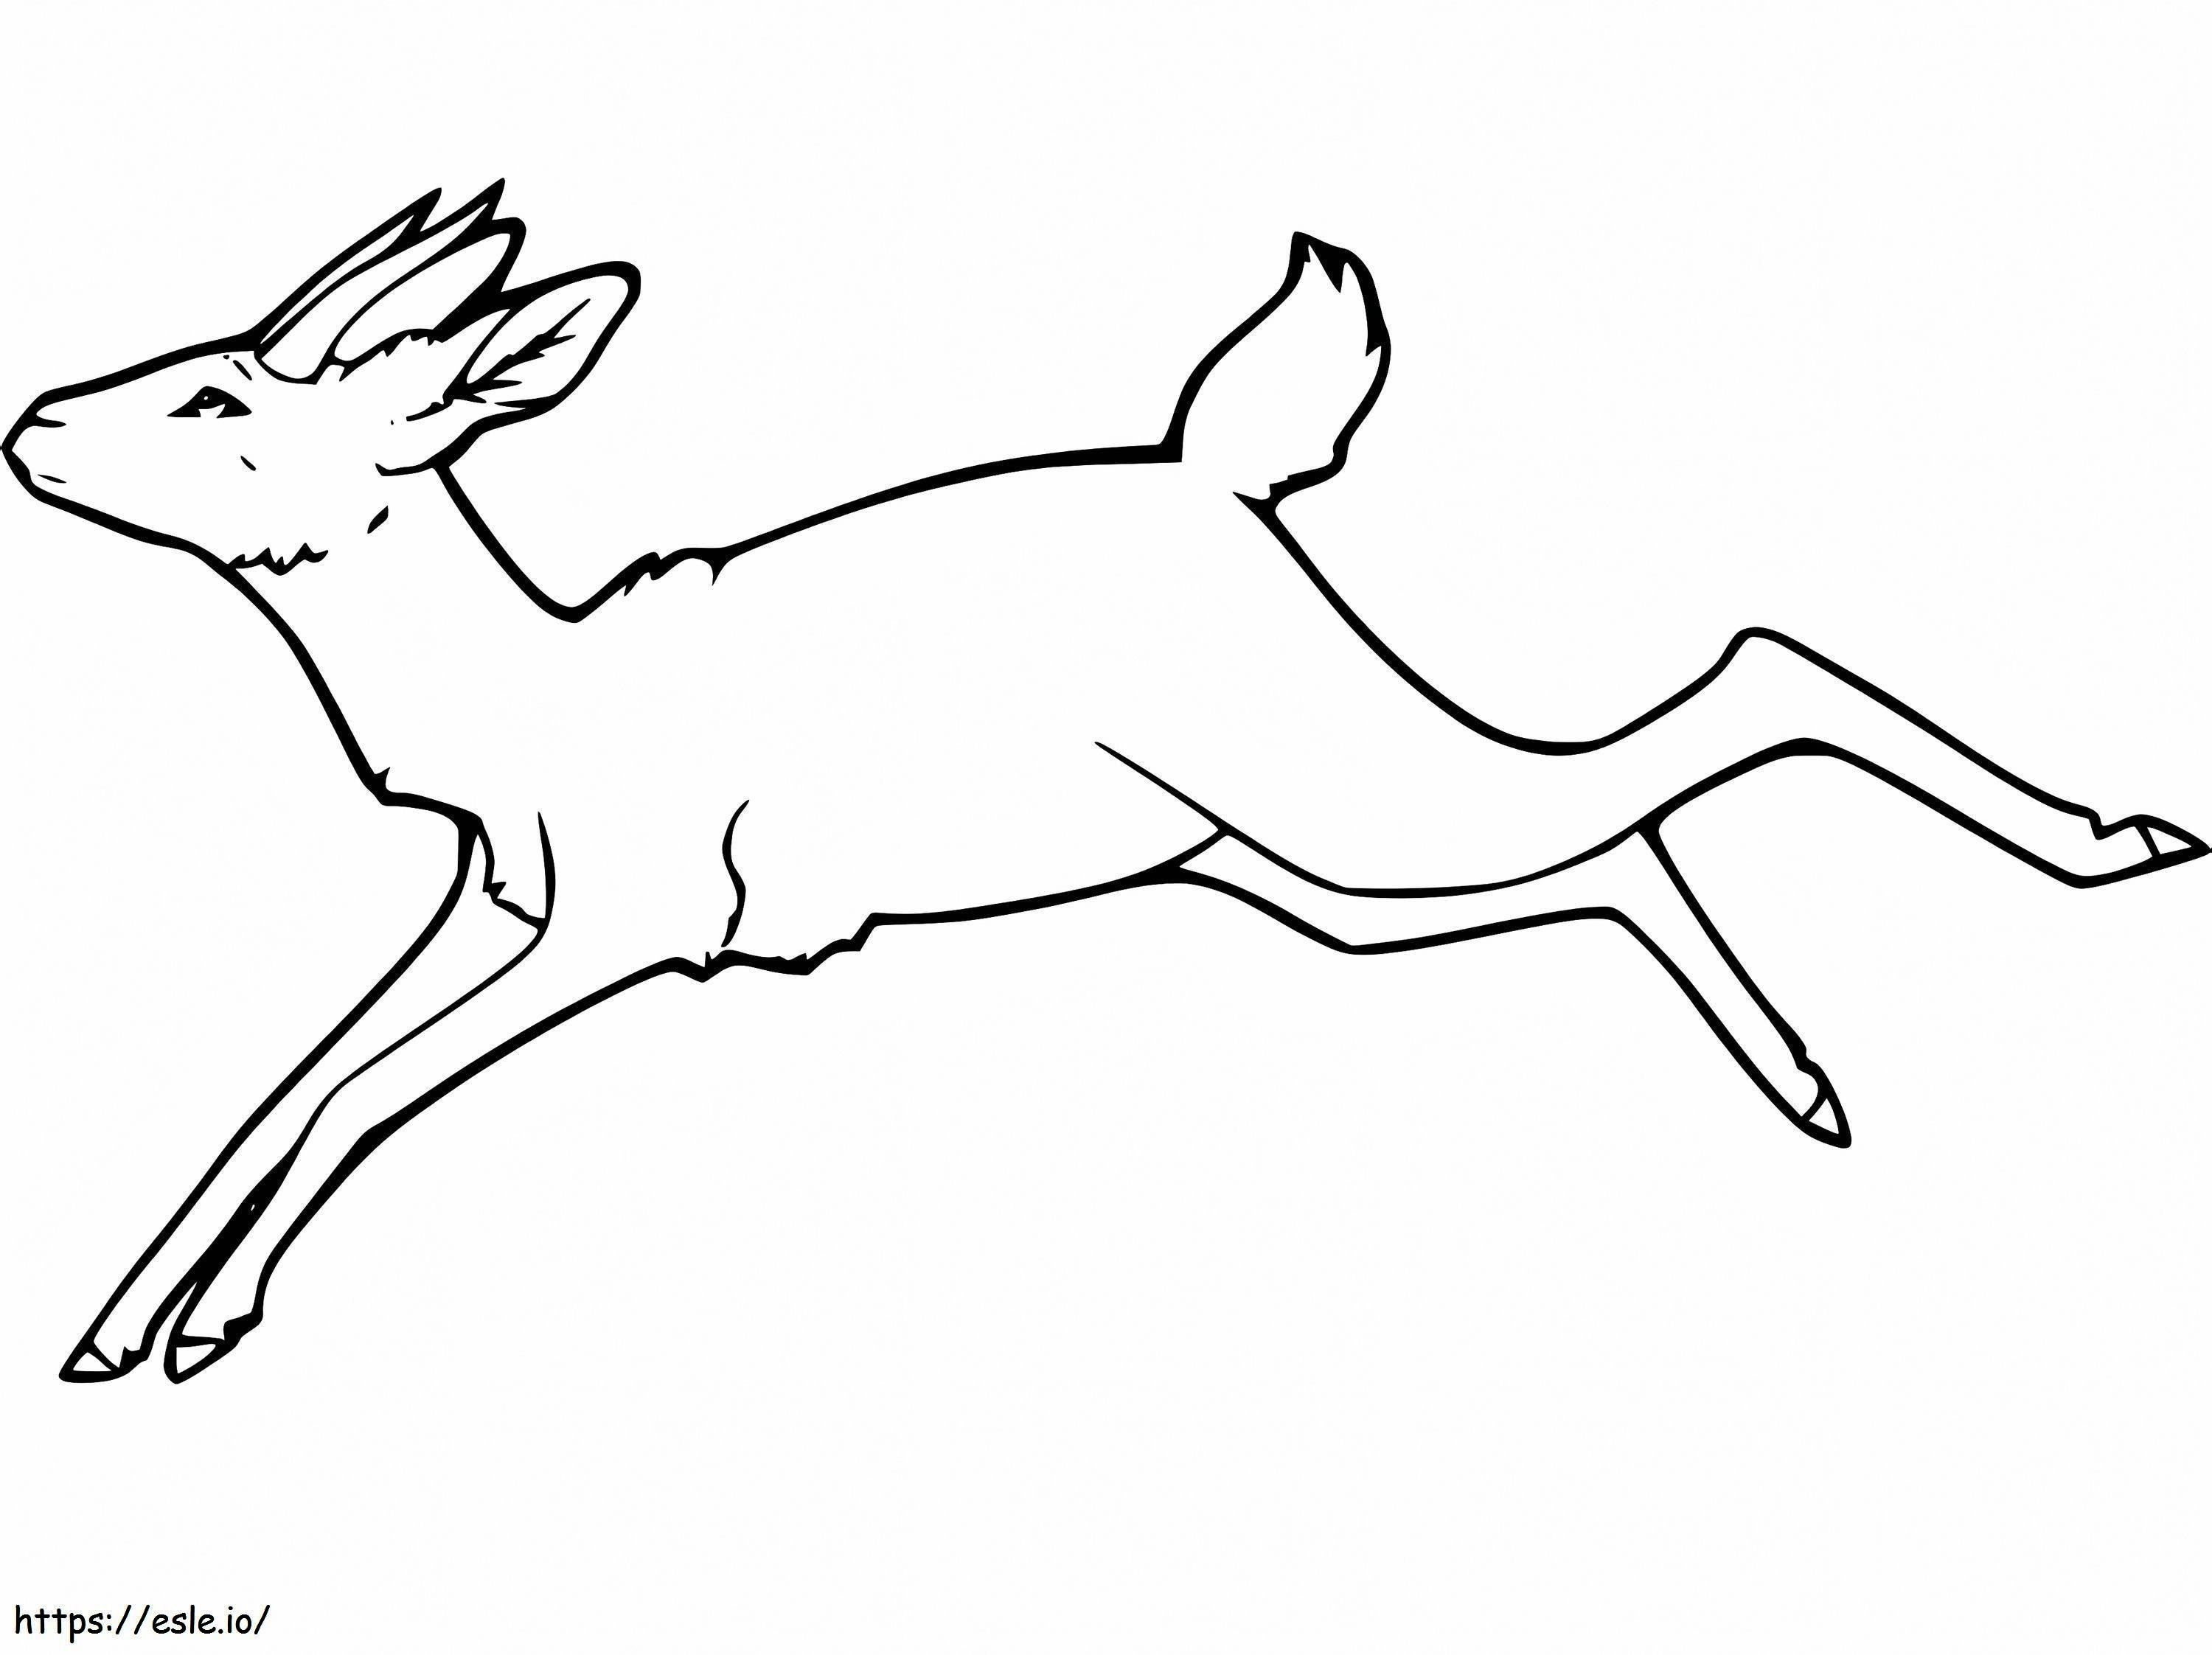 Gazelle alergând de colorat